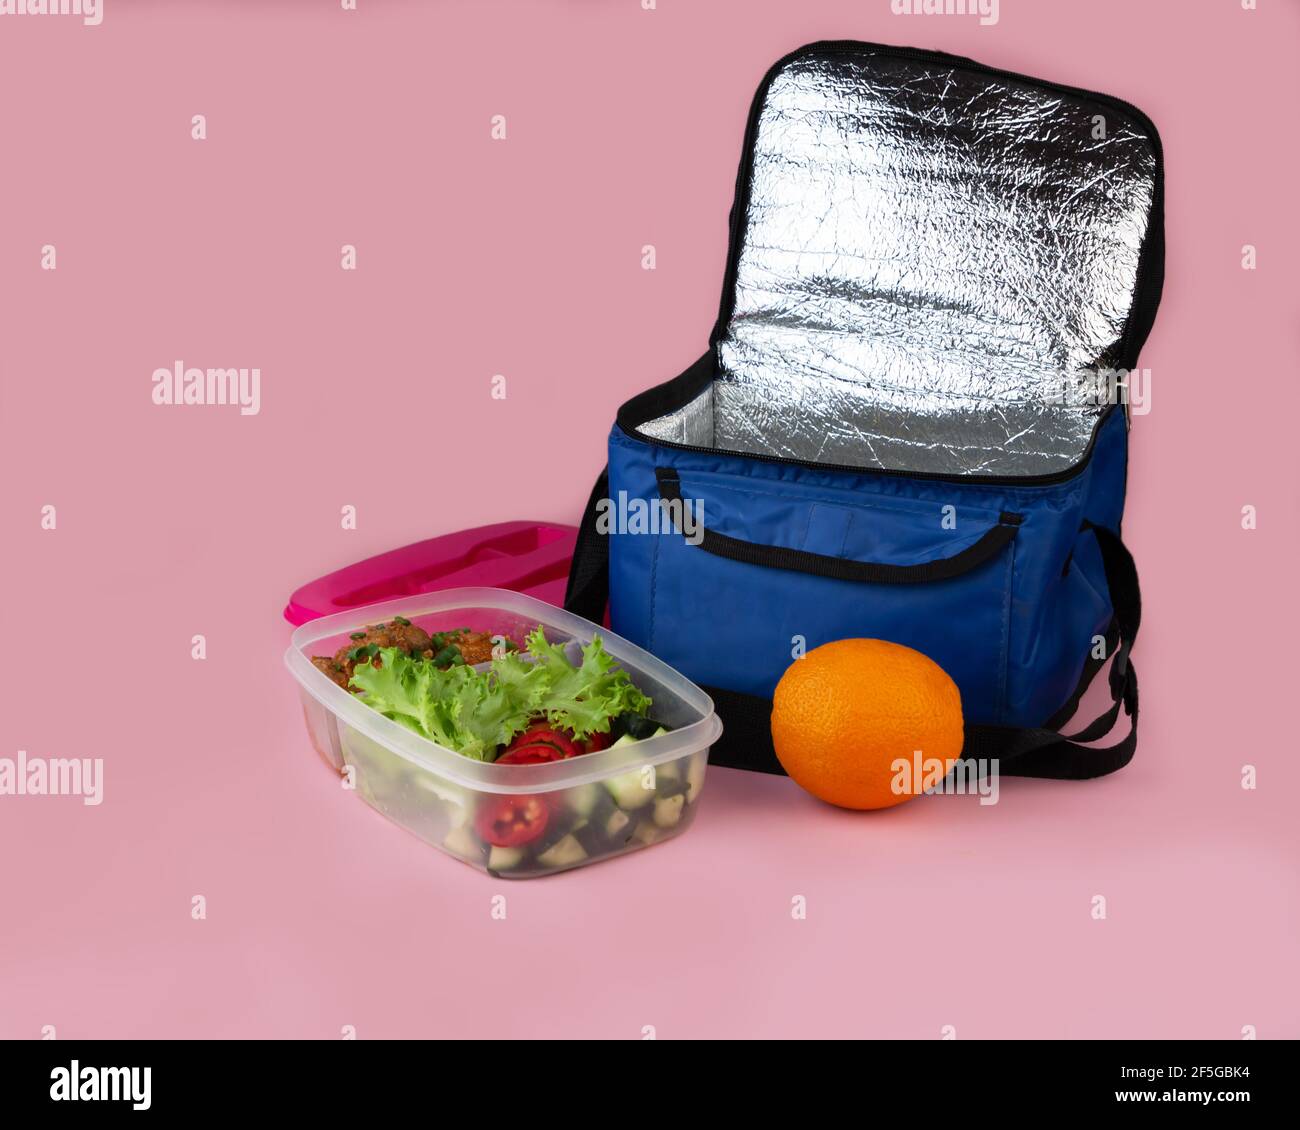 Bolsa térmica y recipiente con ensalada, carne y naranja. Almuerzo casero  para llevar Fotografía de stock - Alamy